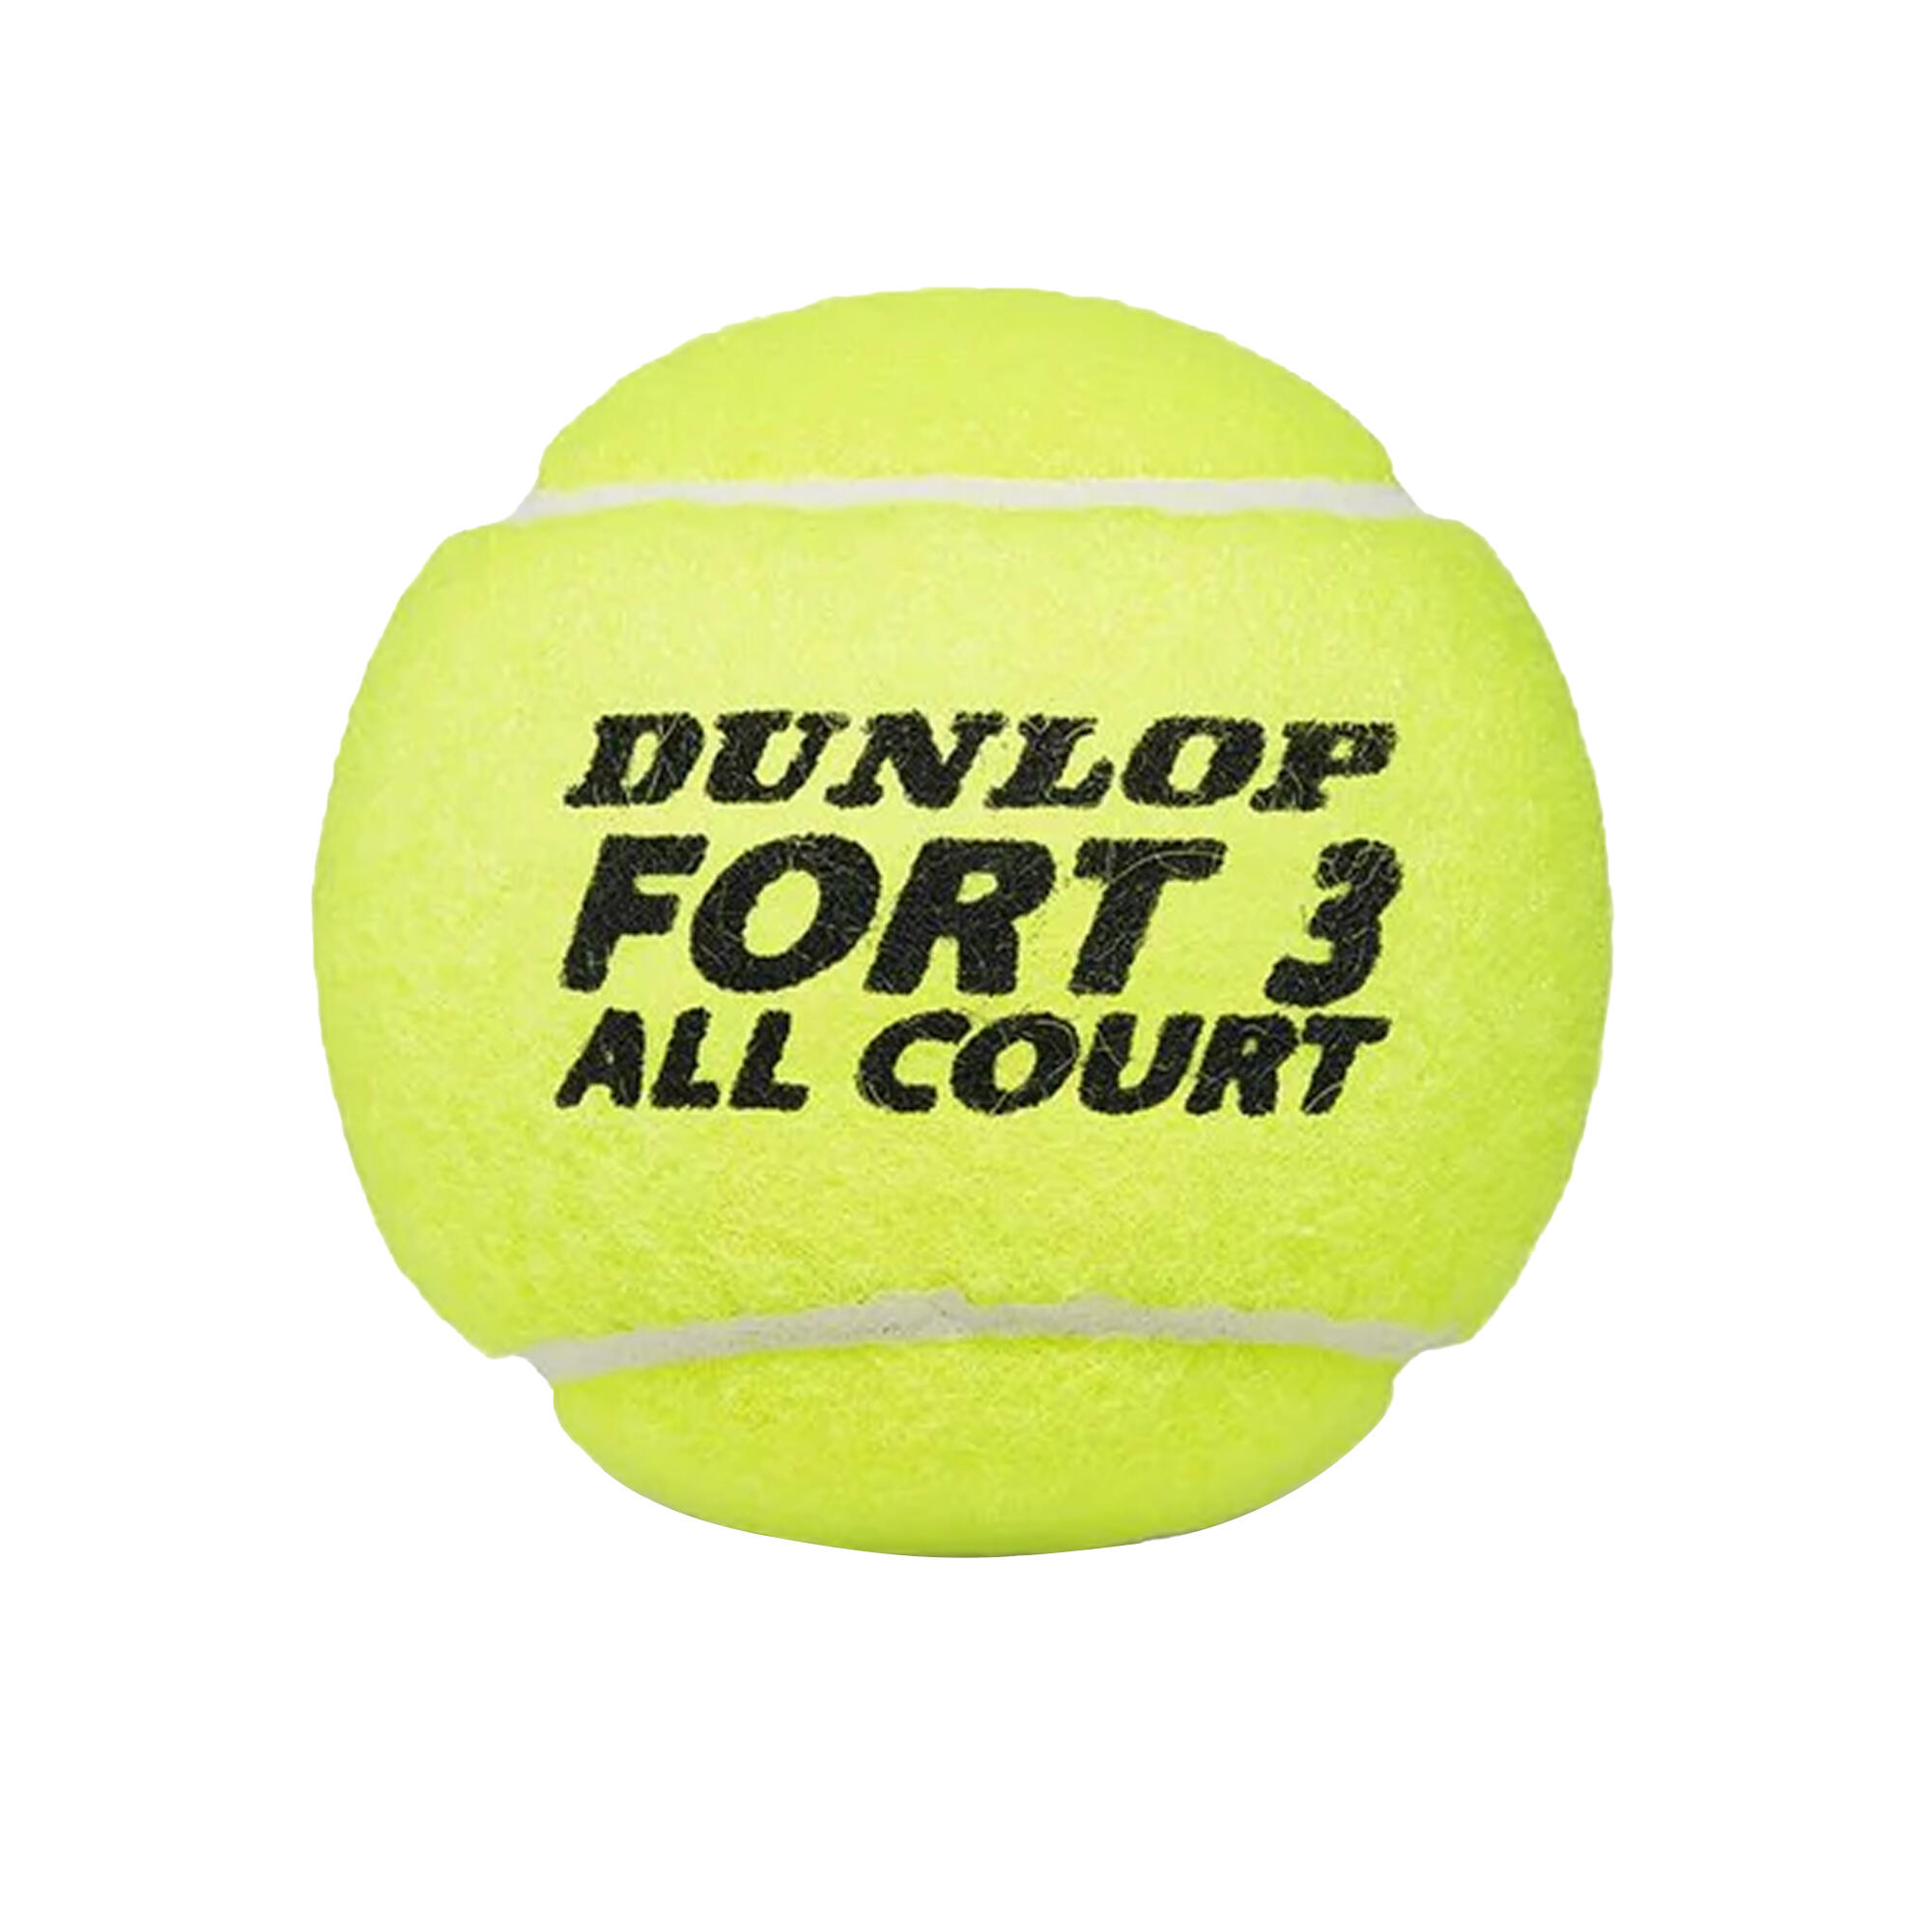 DUNLOP Fort All Court Tennis Balls (Pack Of 12) (Fluorescent Yellow)